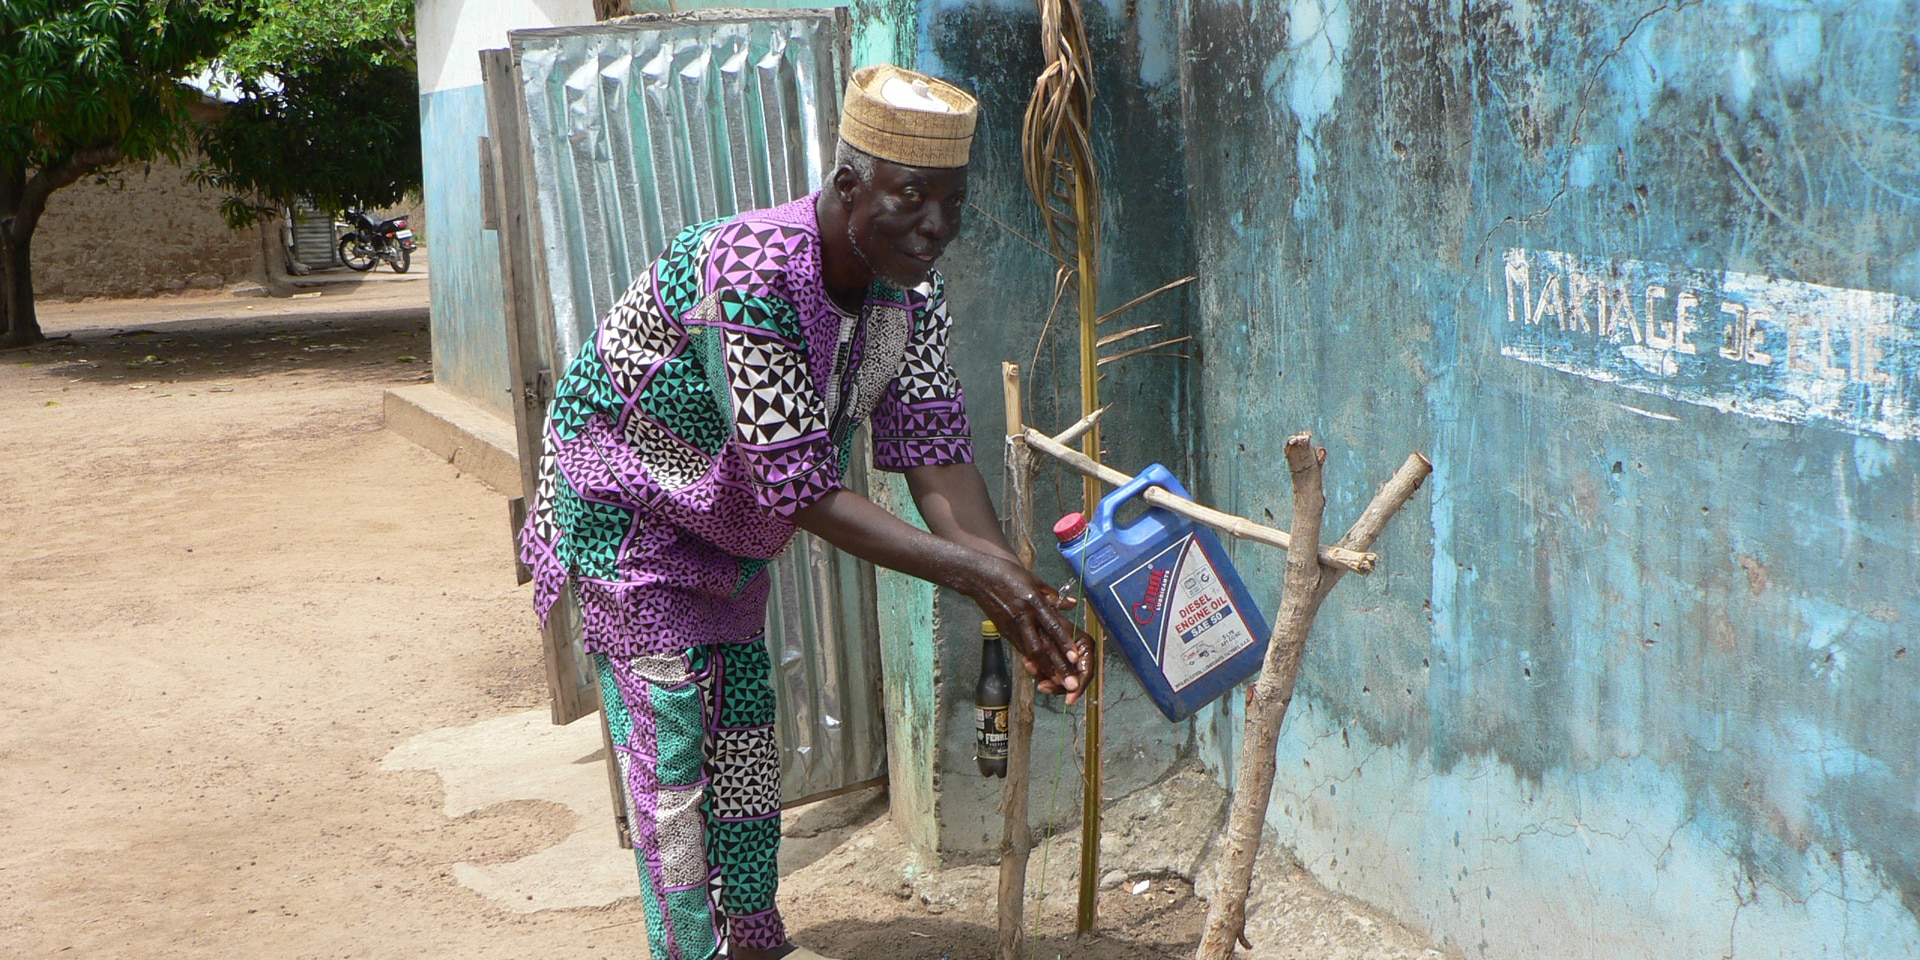 Au Bénin, un homme se tient devant une hutte et utilise une installation sanitaire improvisée pour se laver soigneusement les mains.